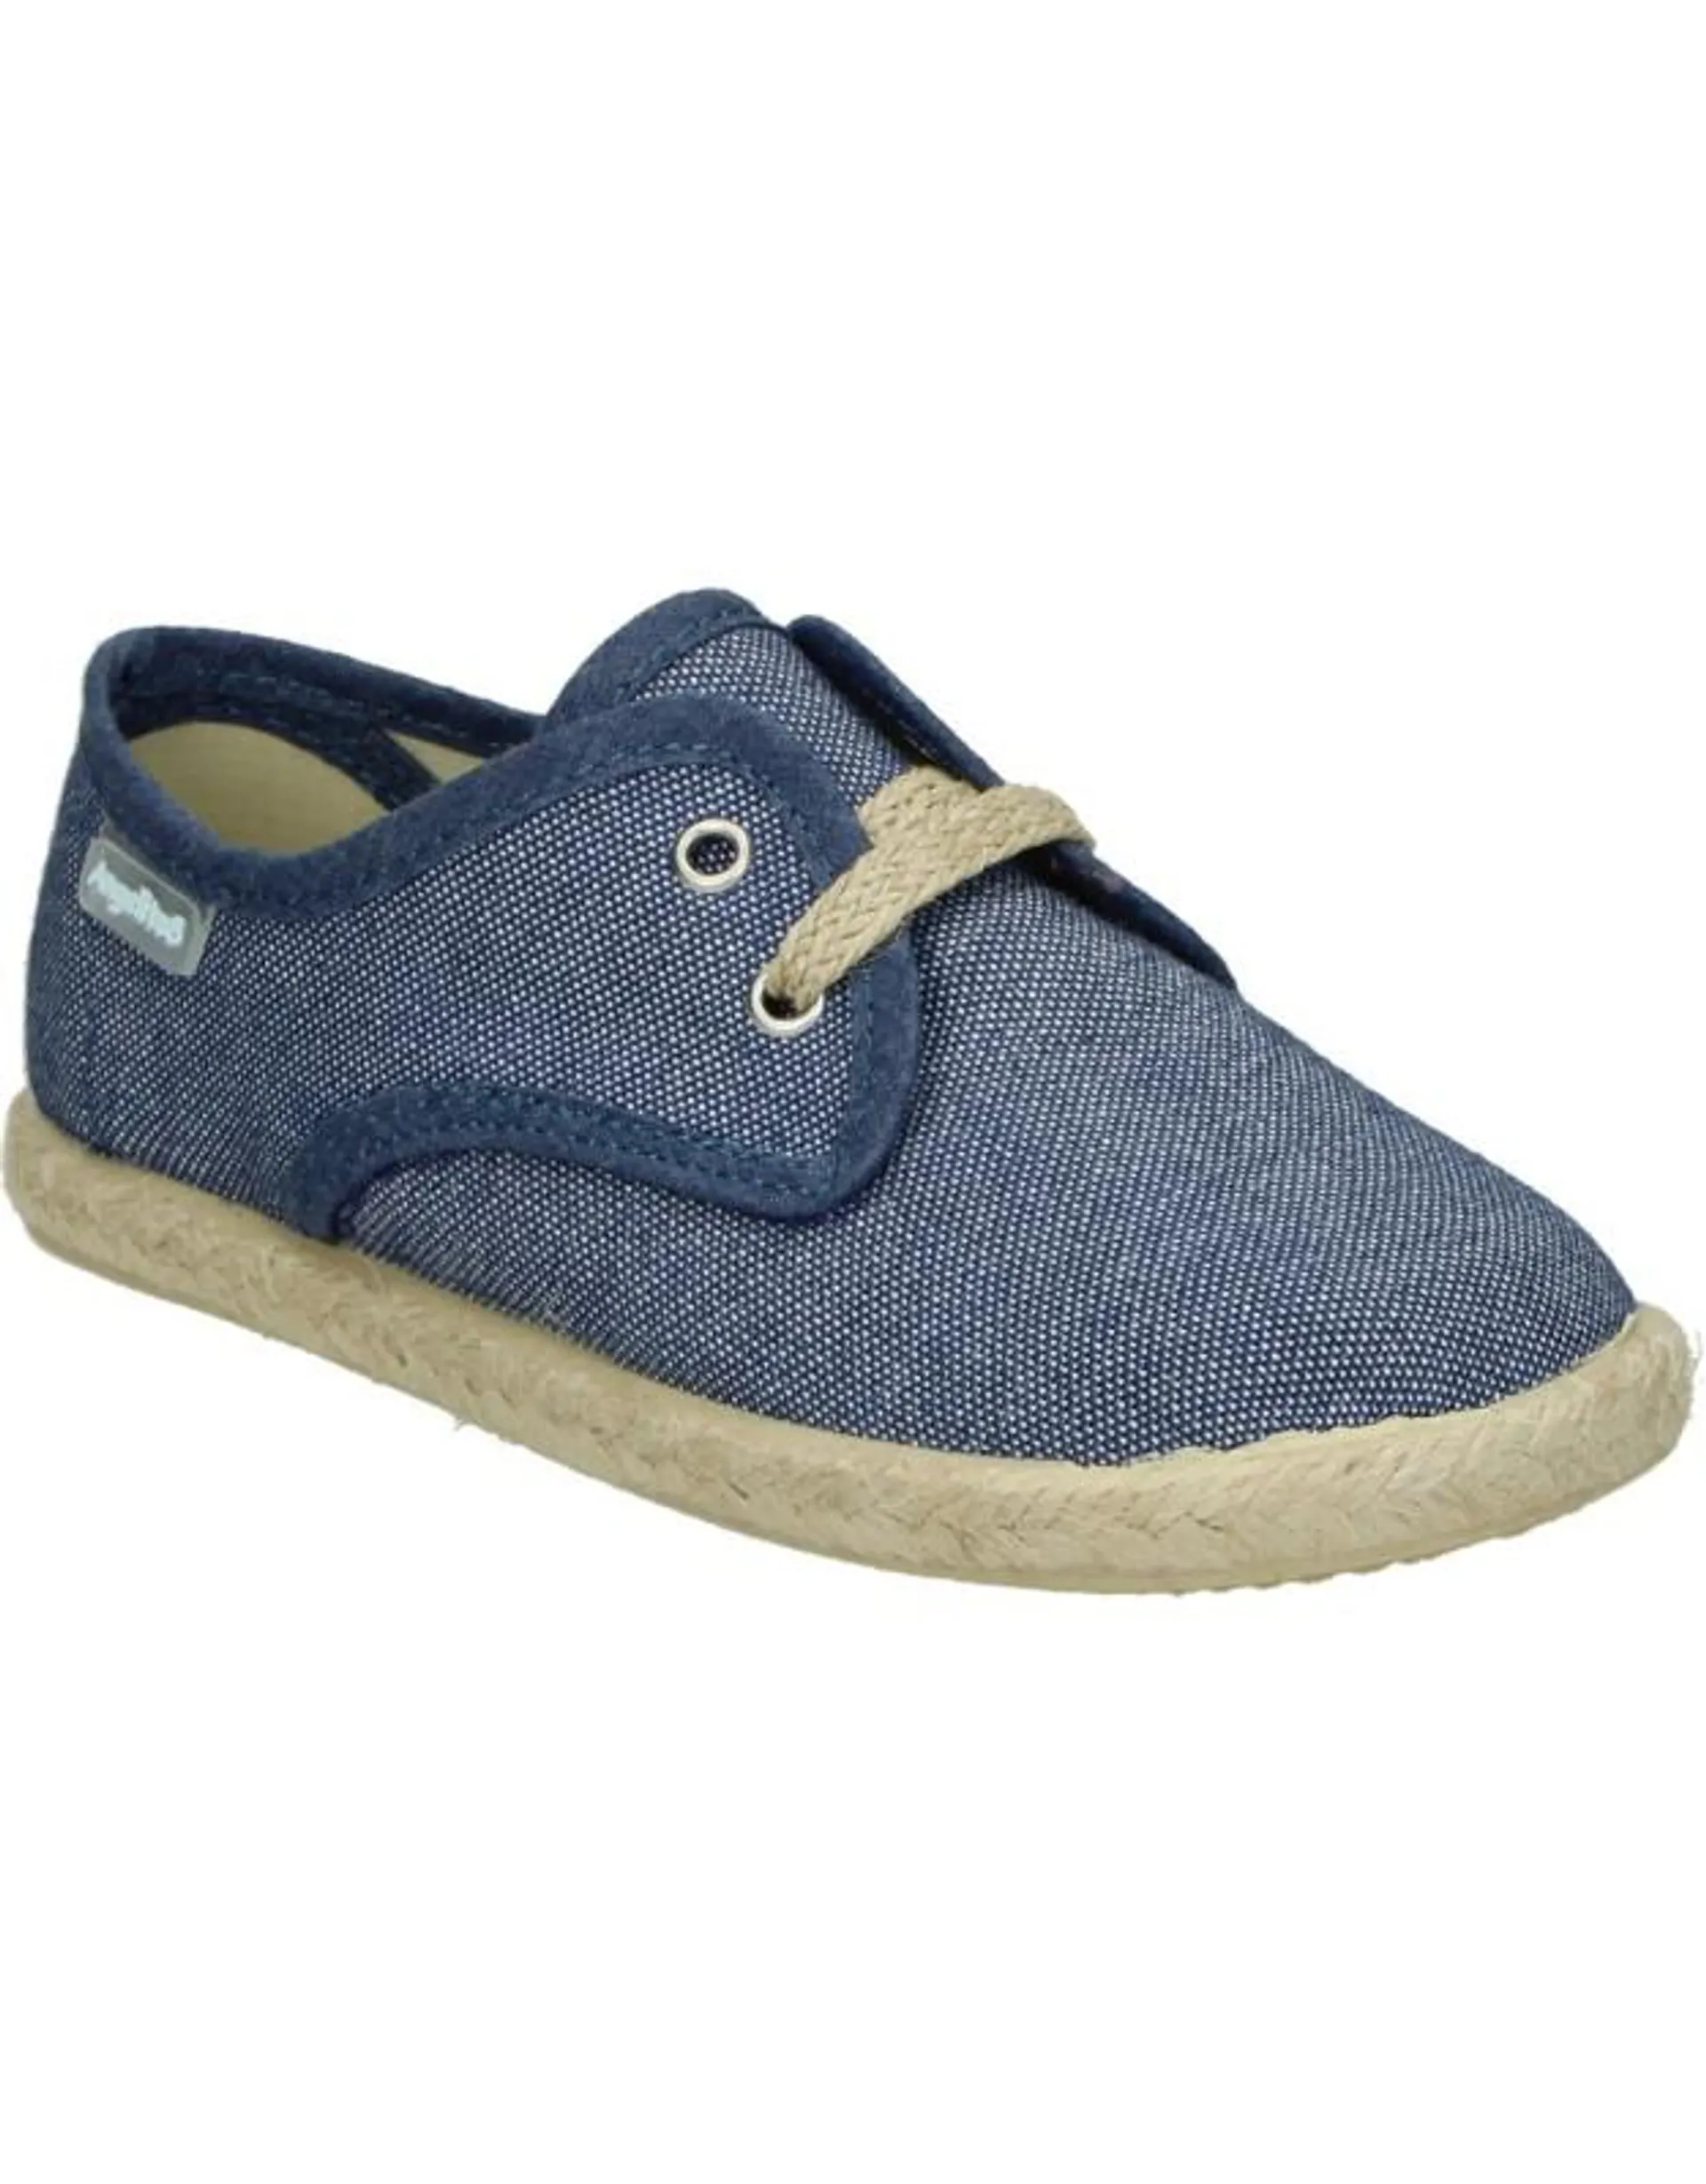 Zapatos azules para niño Angelitos 115